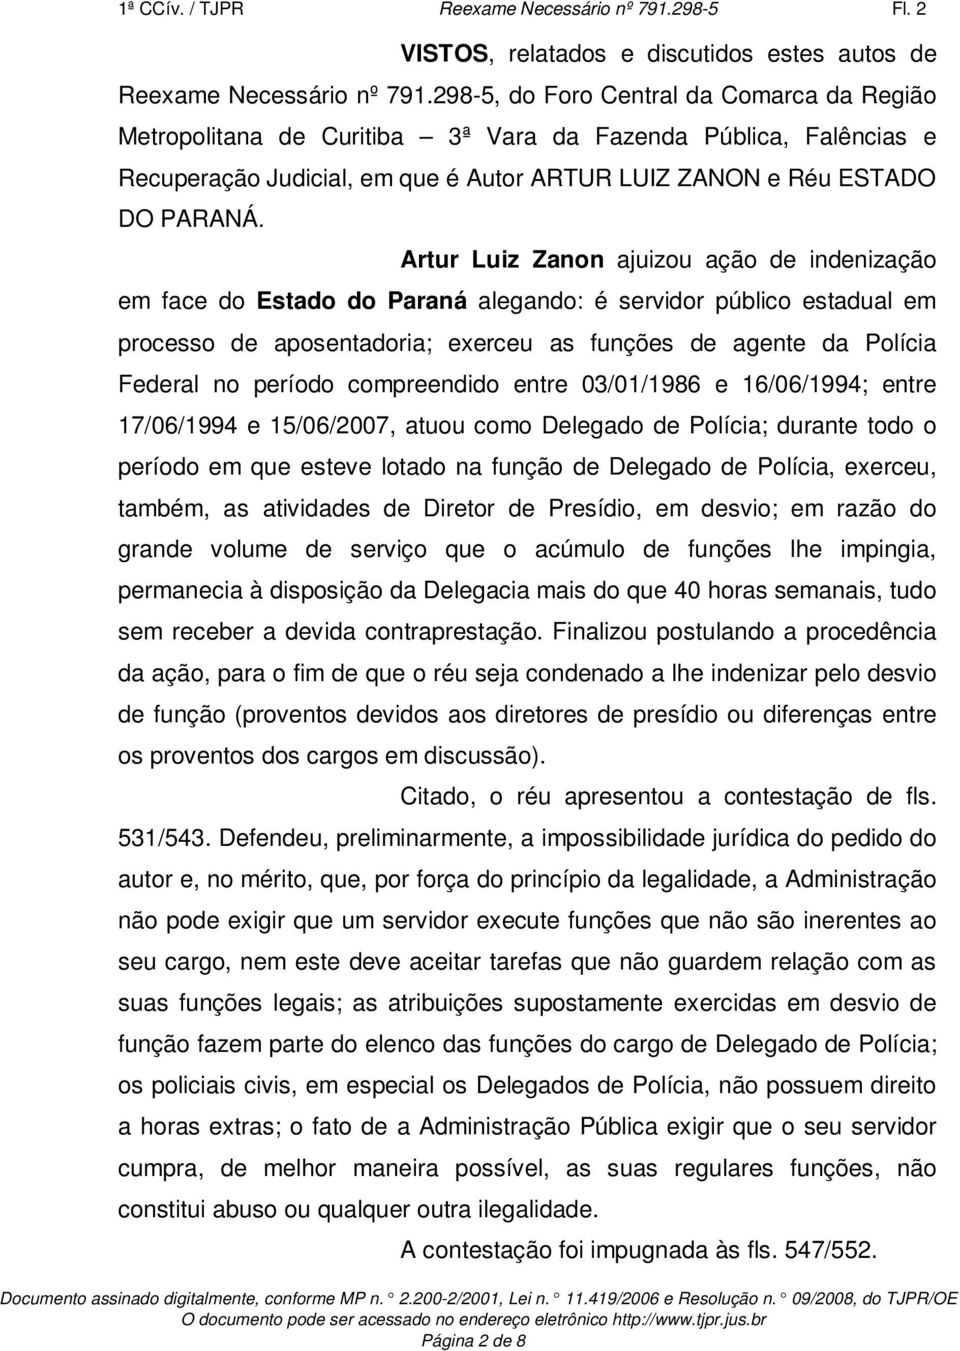 Artur Luiz Zanon ajuizou ação de indenização em face do Estado do Paraná alegando: é servidor público estadual em processo de aposentadoria; exerceu as funções de agente da Polícia Federal no período